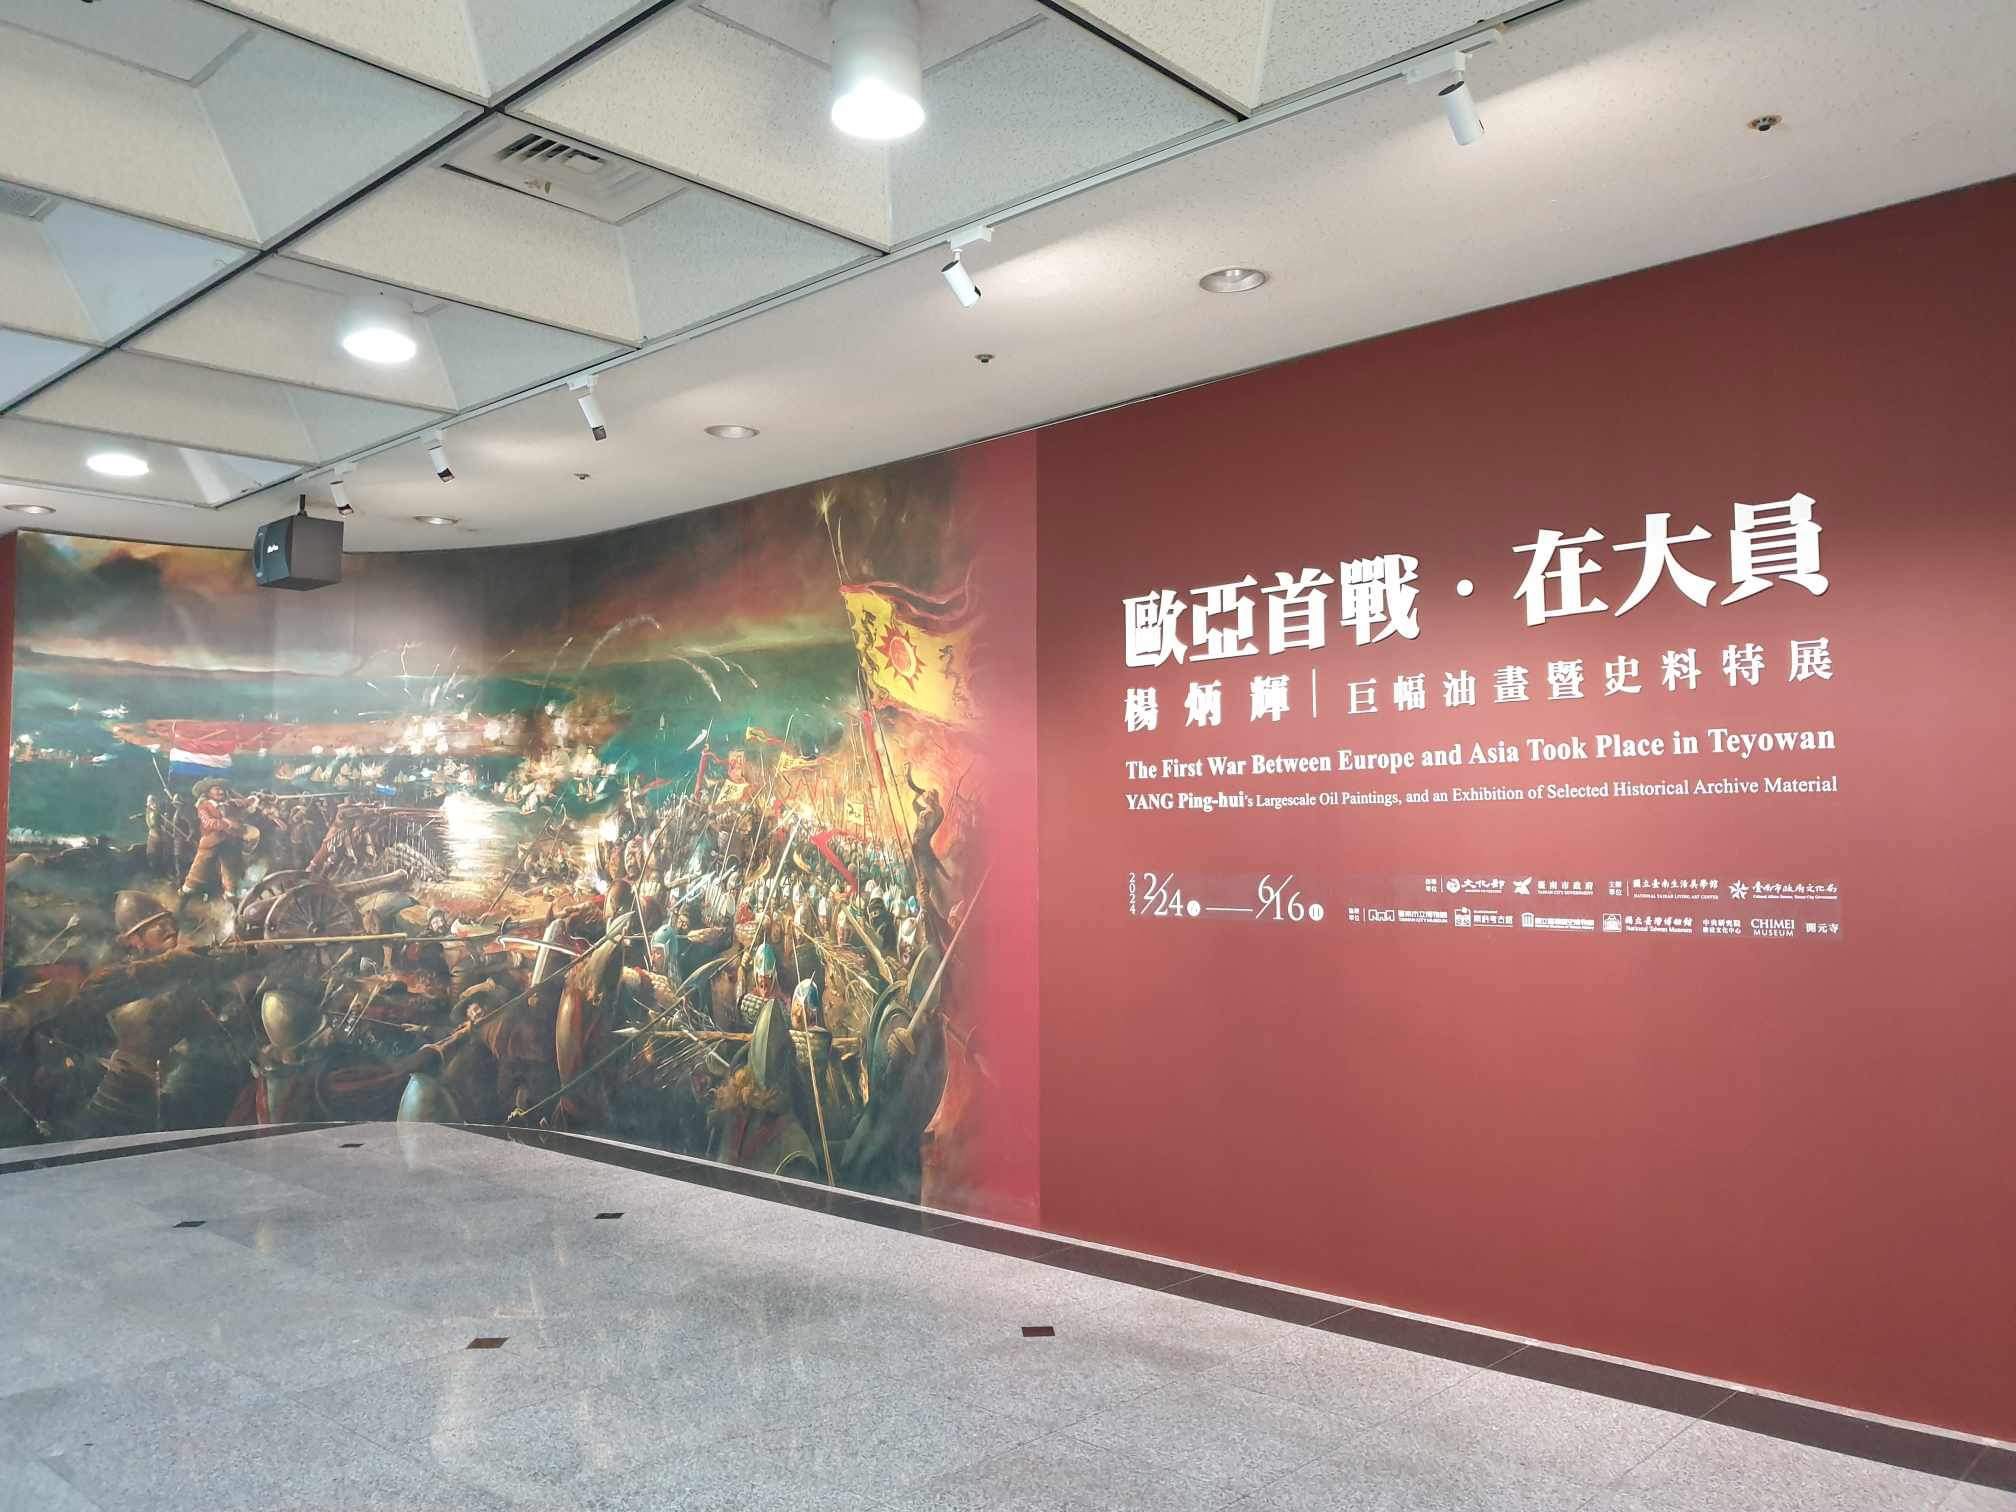 黃愛真》歐亞首戰在大員-用藝術再現台灣四百年前全球地緣位置